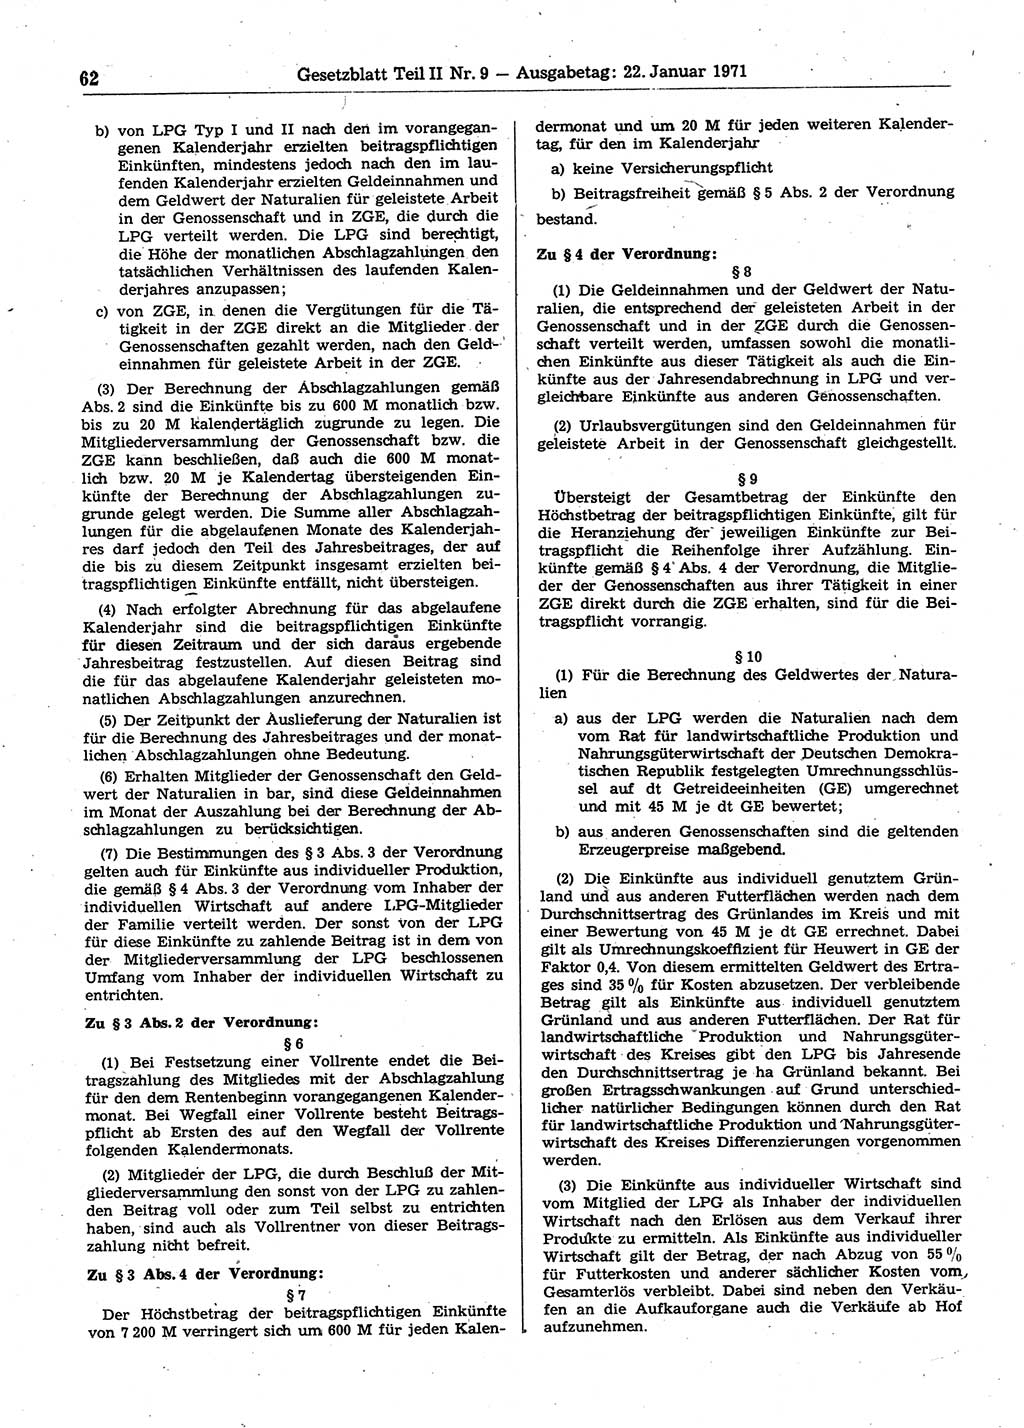 Gesetzblatt (GBl.) der Deutschen Demokratischen Republik (DDR) Teil ⅠⅠ 1971, Seite 62 (GBl. DDR ⅠⅠ 1971, S. 62)